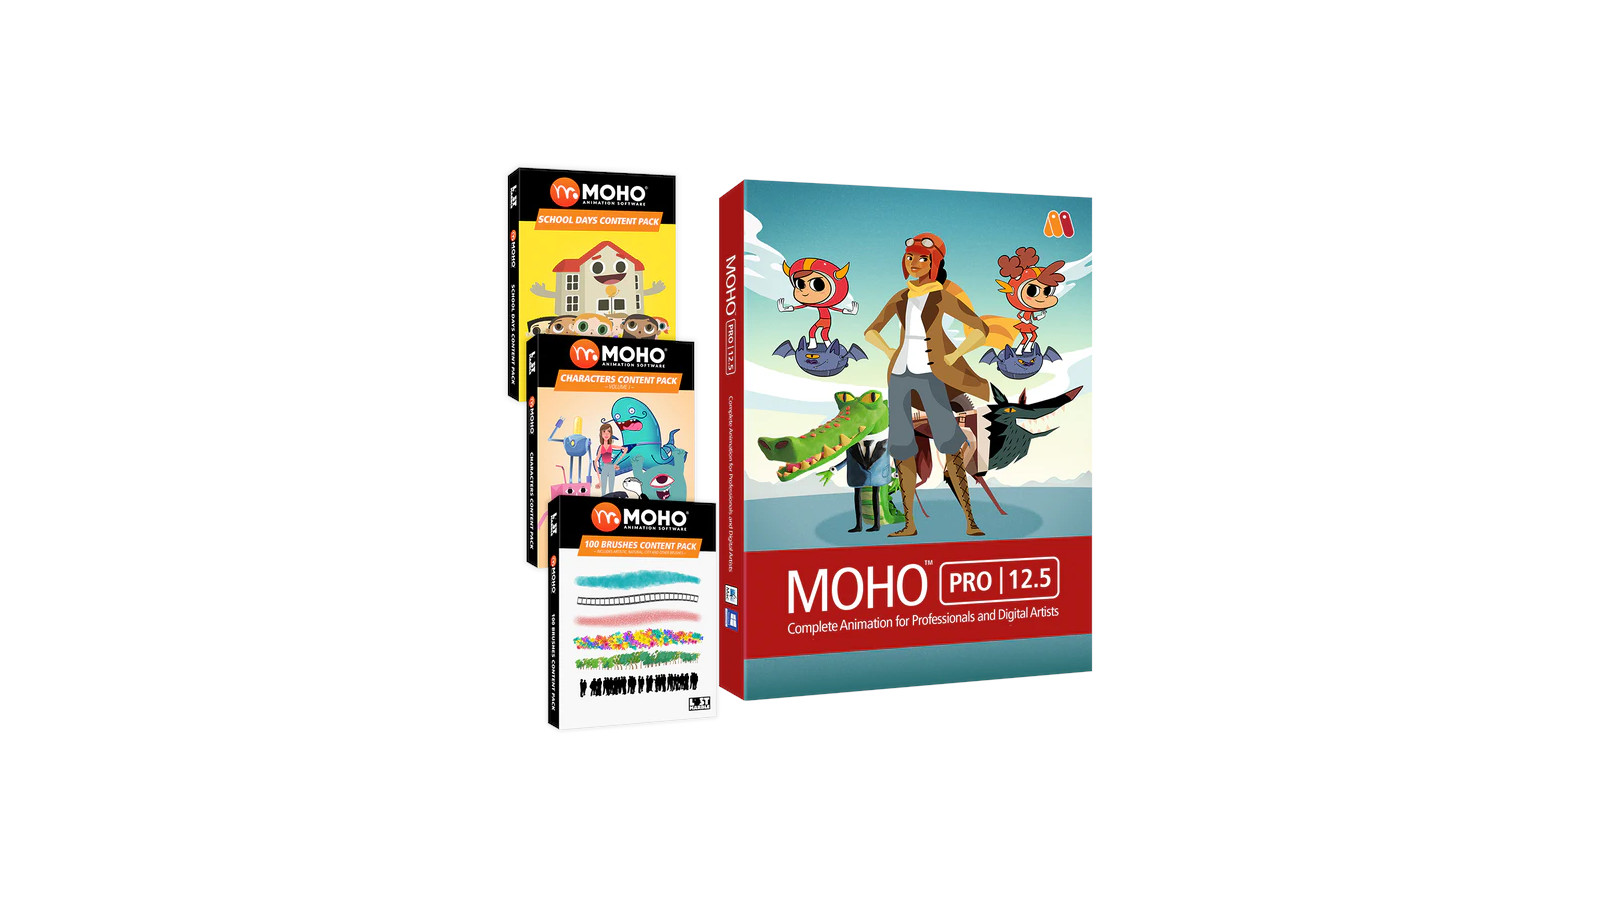 MOHO PRO 12.5 BUNDLE PC/MAC CD Key, $386.84